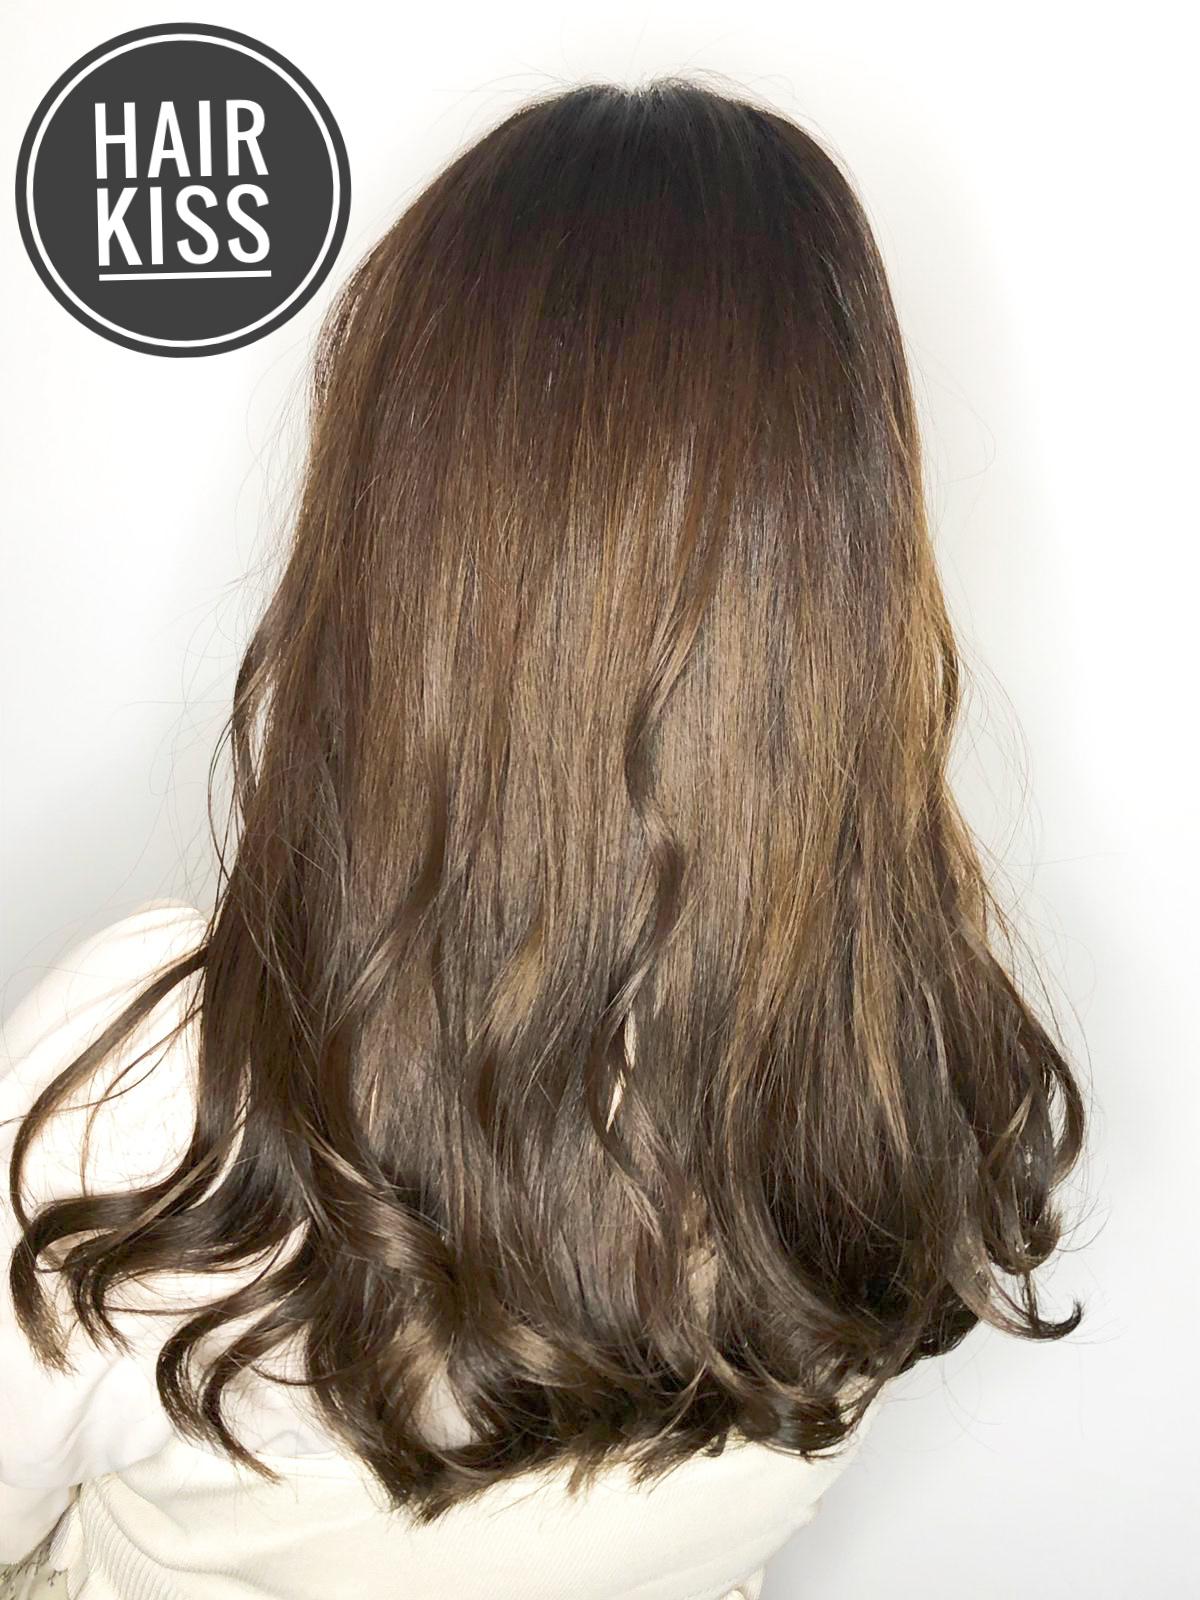 髮型作品參考:Hair kiss ❤️